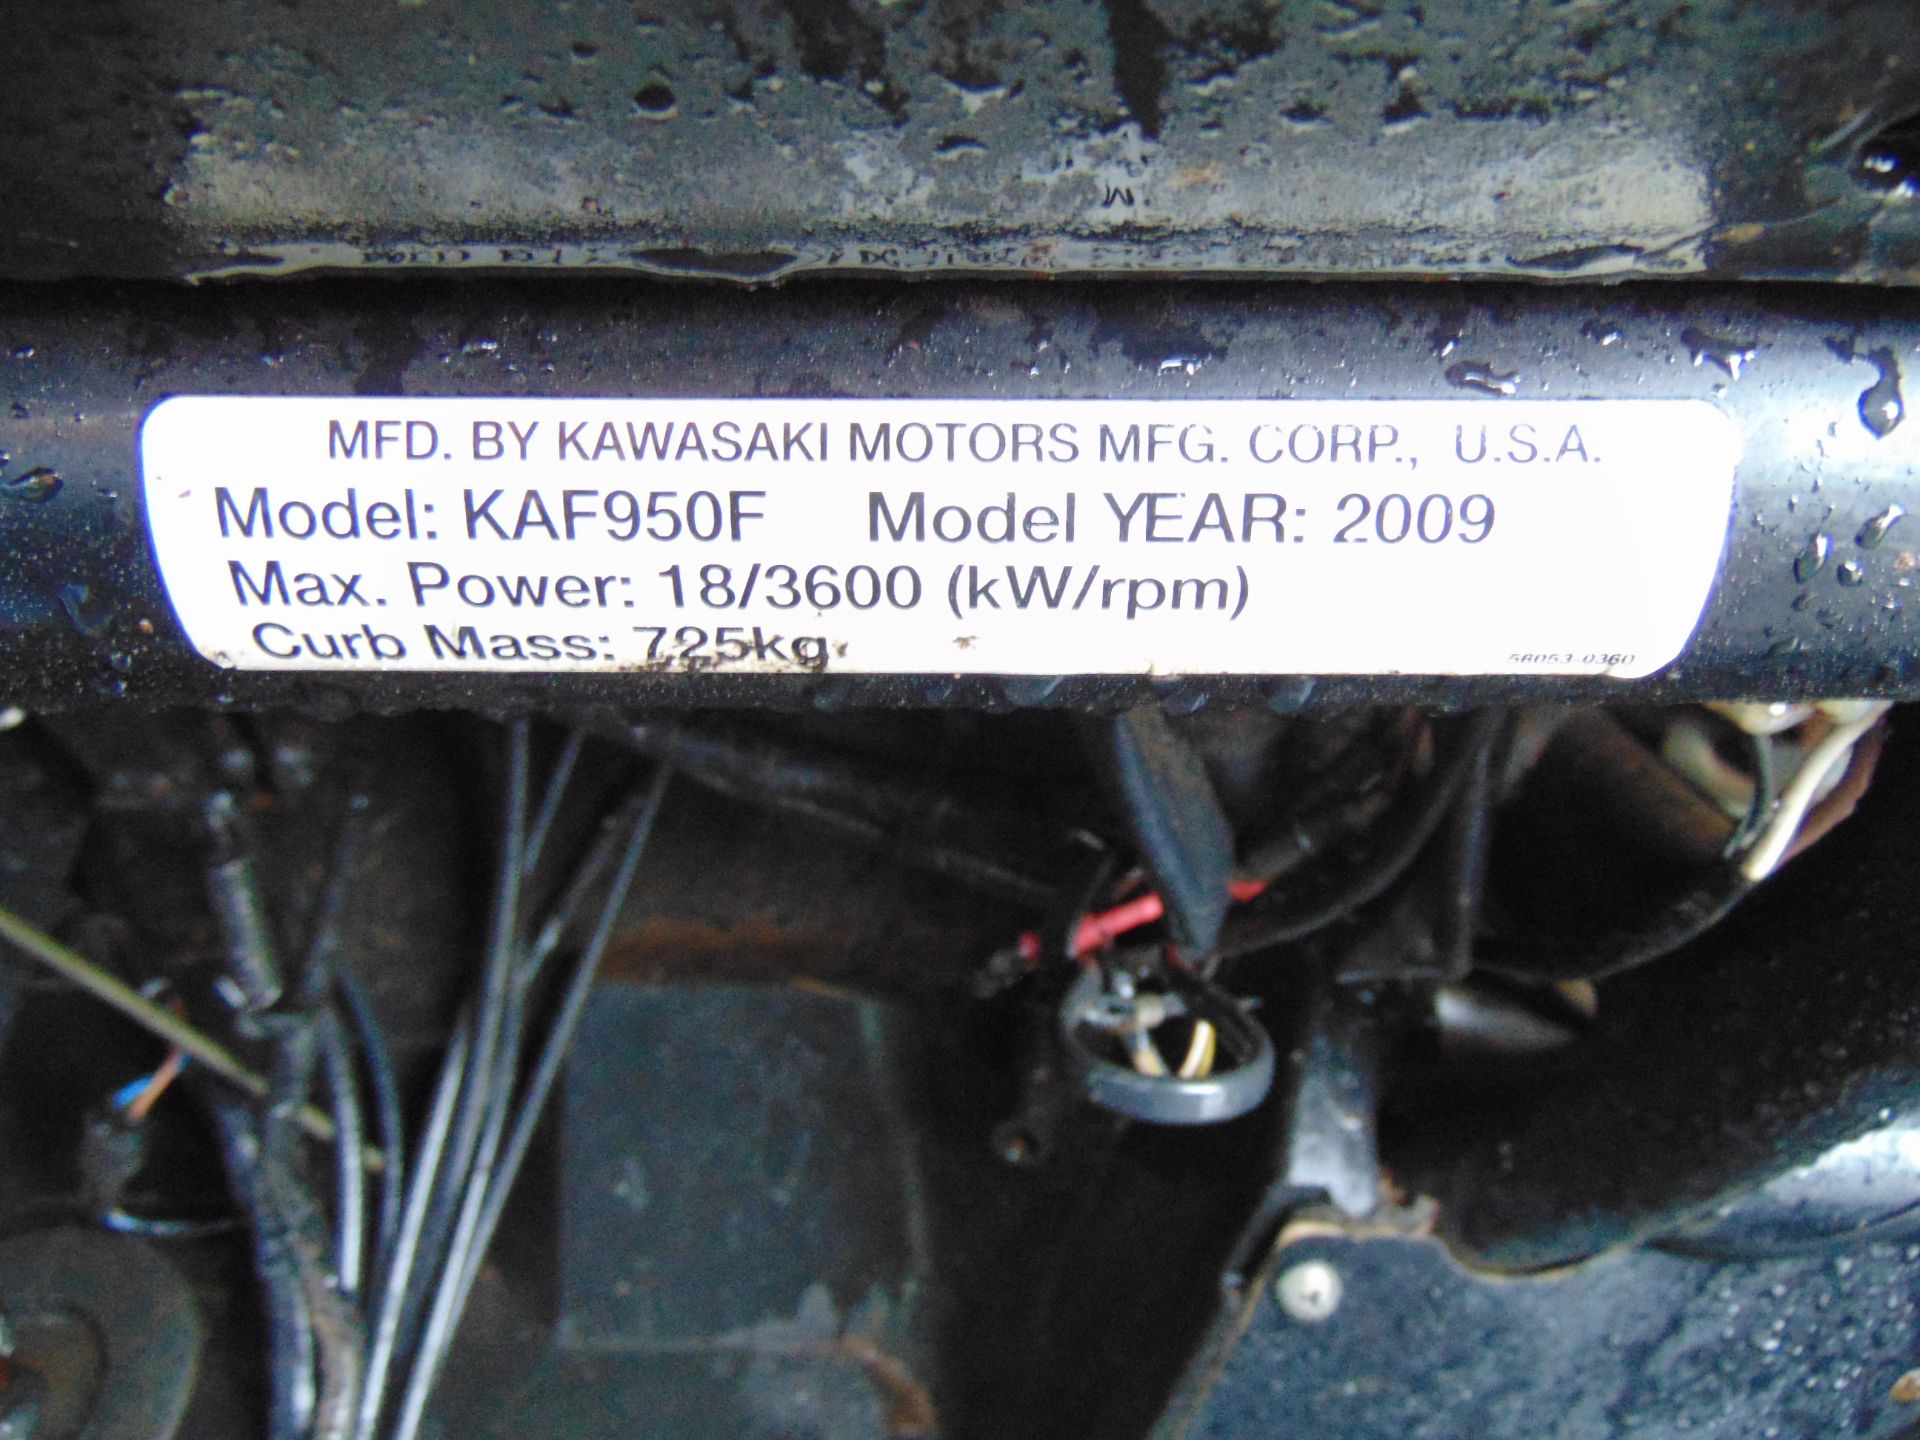 Kawasaki Mule 4010 4WD Diesel Utility Vehicle UTV c/w Power steering & Front Winch - Image 17 of 23